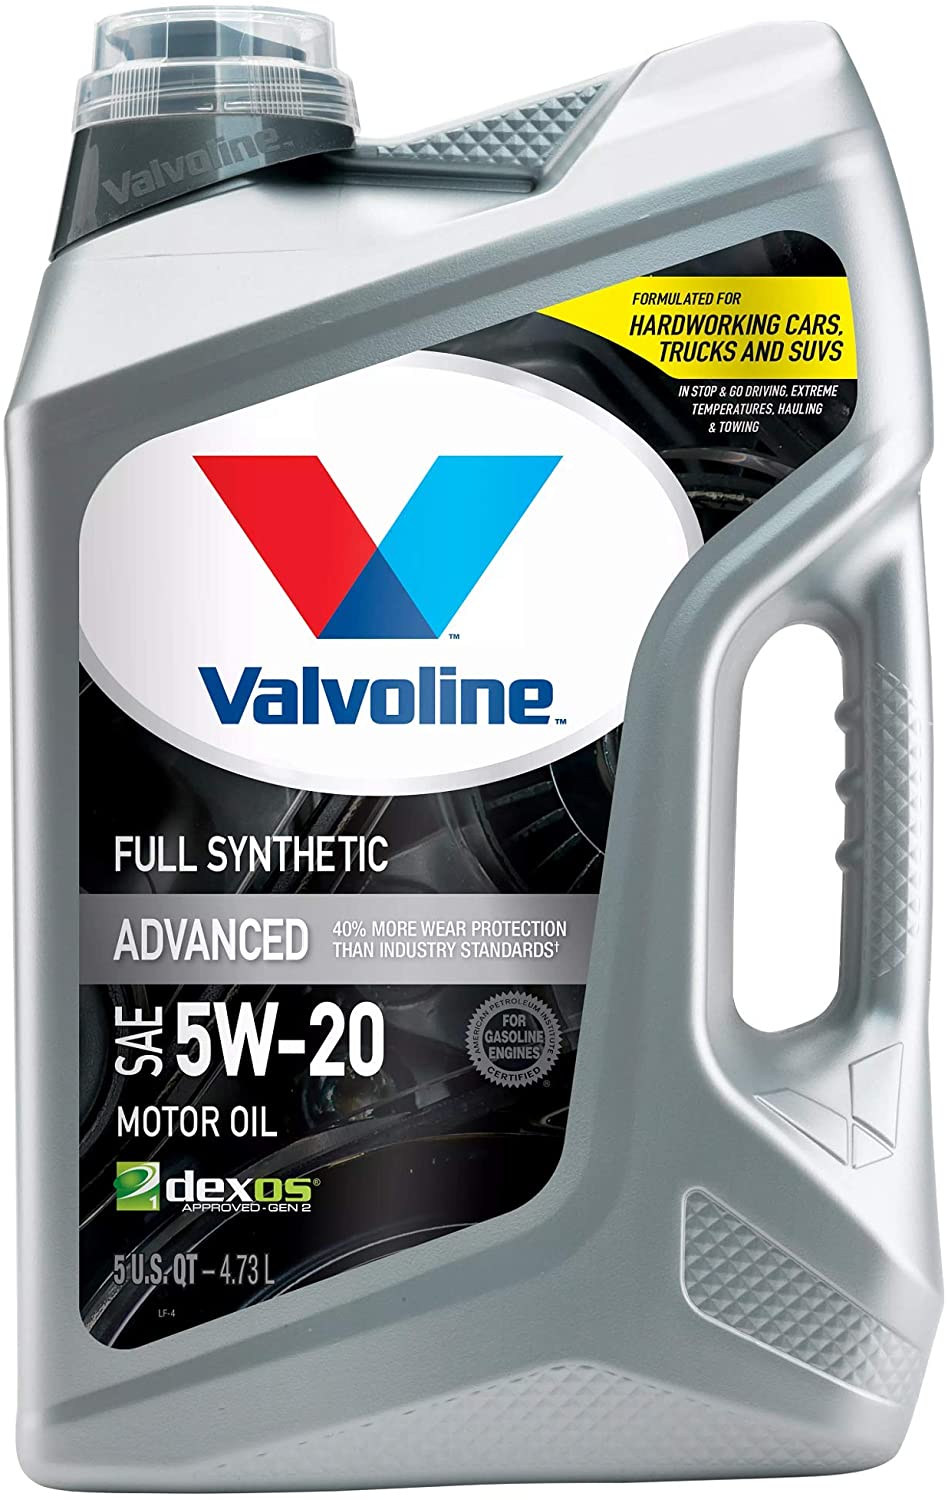 Valvoline Advanced Full Synthetic SAE 5W-20 Motor Oil 5 QT